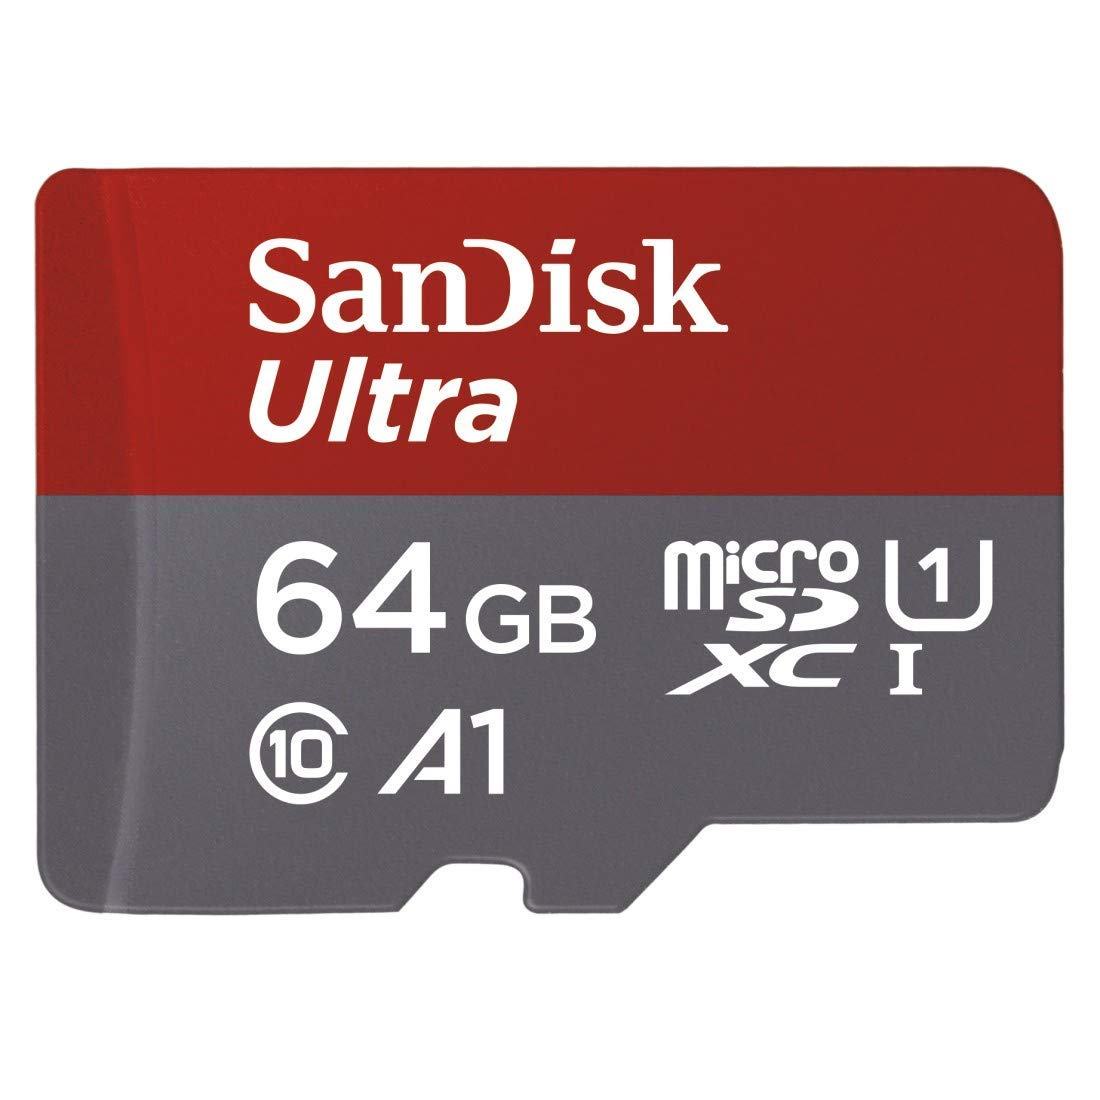 Za slučaj da vam mobitel posjeduje još uvijek utor za MicroSD karticu, a usfali vam malo prostora, možda biste trebali razmisliti o kupnji memorijske kartice. A možda ste kupili i Nintendov Switch ili Go Pro Hero 7 na Black Friday popustima, pa vam treba kartica. Pronašli smo Sandiskovu micro SD memorijsku karticu kapaciteta 64 GB u <a href="https://www.mall.hr/microsd-kartice/sandisk-memorijska-kartica-ultra-microsdxc-64gb-100mbs-uhs-i-a1-adapter"><u><b>Mall.hr-u</b></u></a>, sniženu za 77 posto, sa 314 kuna na 69,90 kuna.